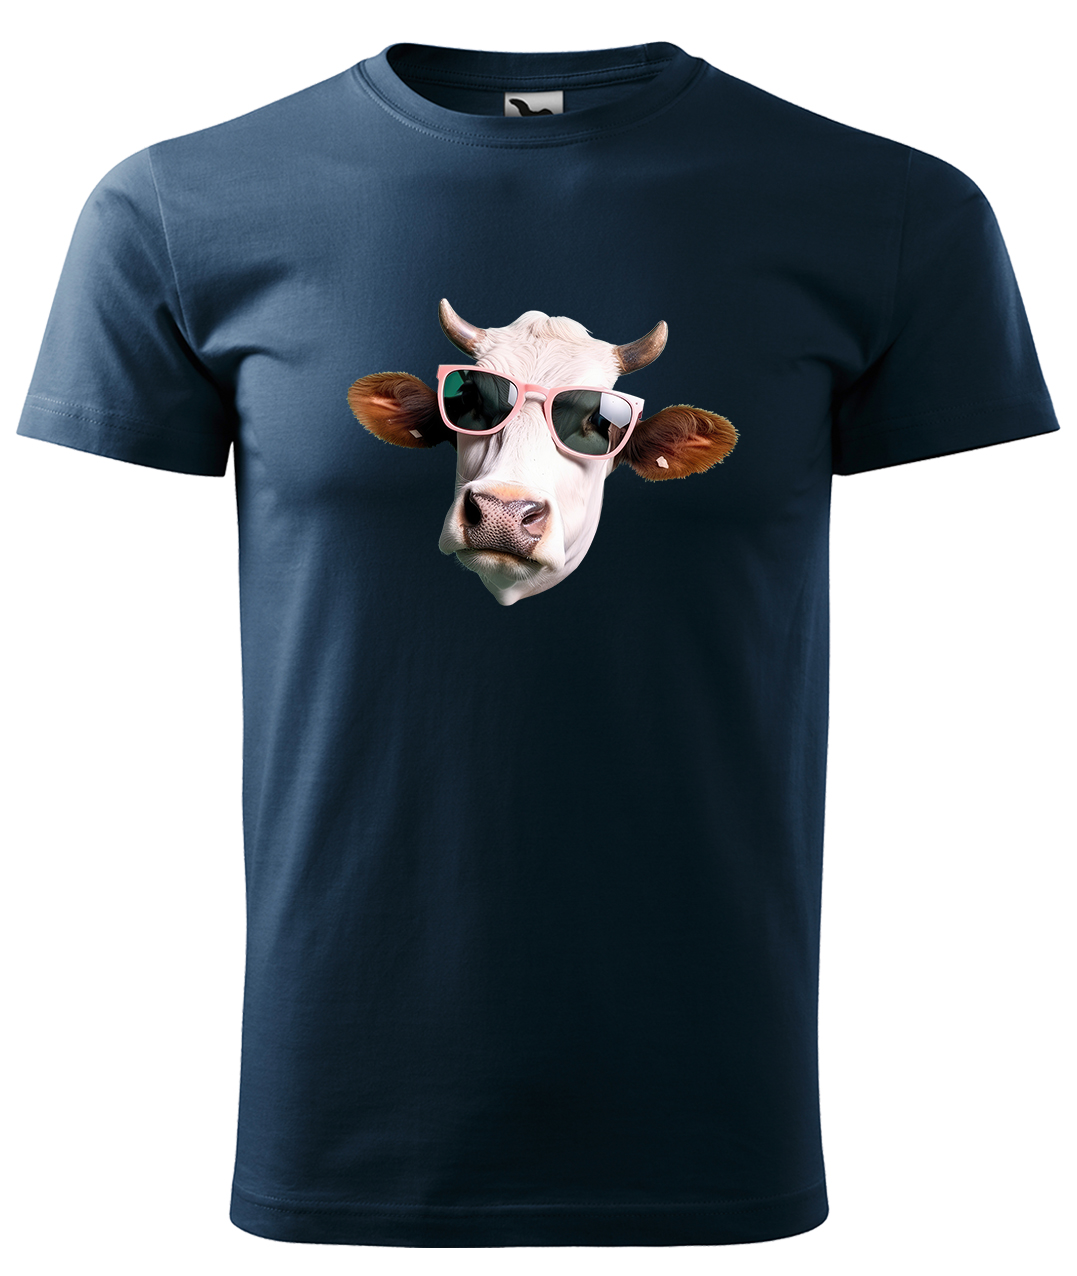 Dětské tričko s krávou - Kráva v brýlích Velikost: 4 roky / 110 cm, Barva: Námořní modrá (02), Délka rukávu: Krátký rukáv